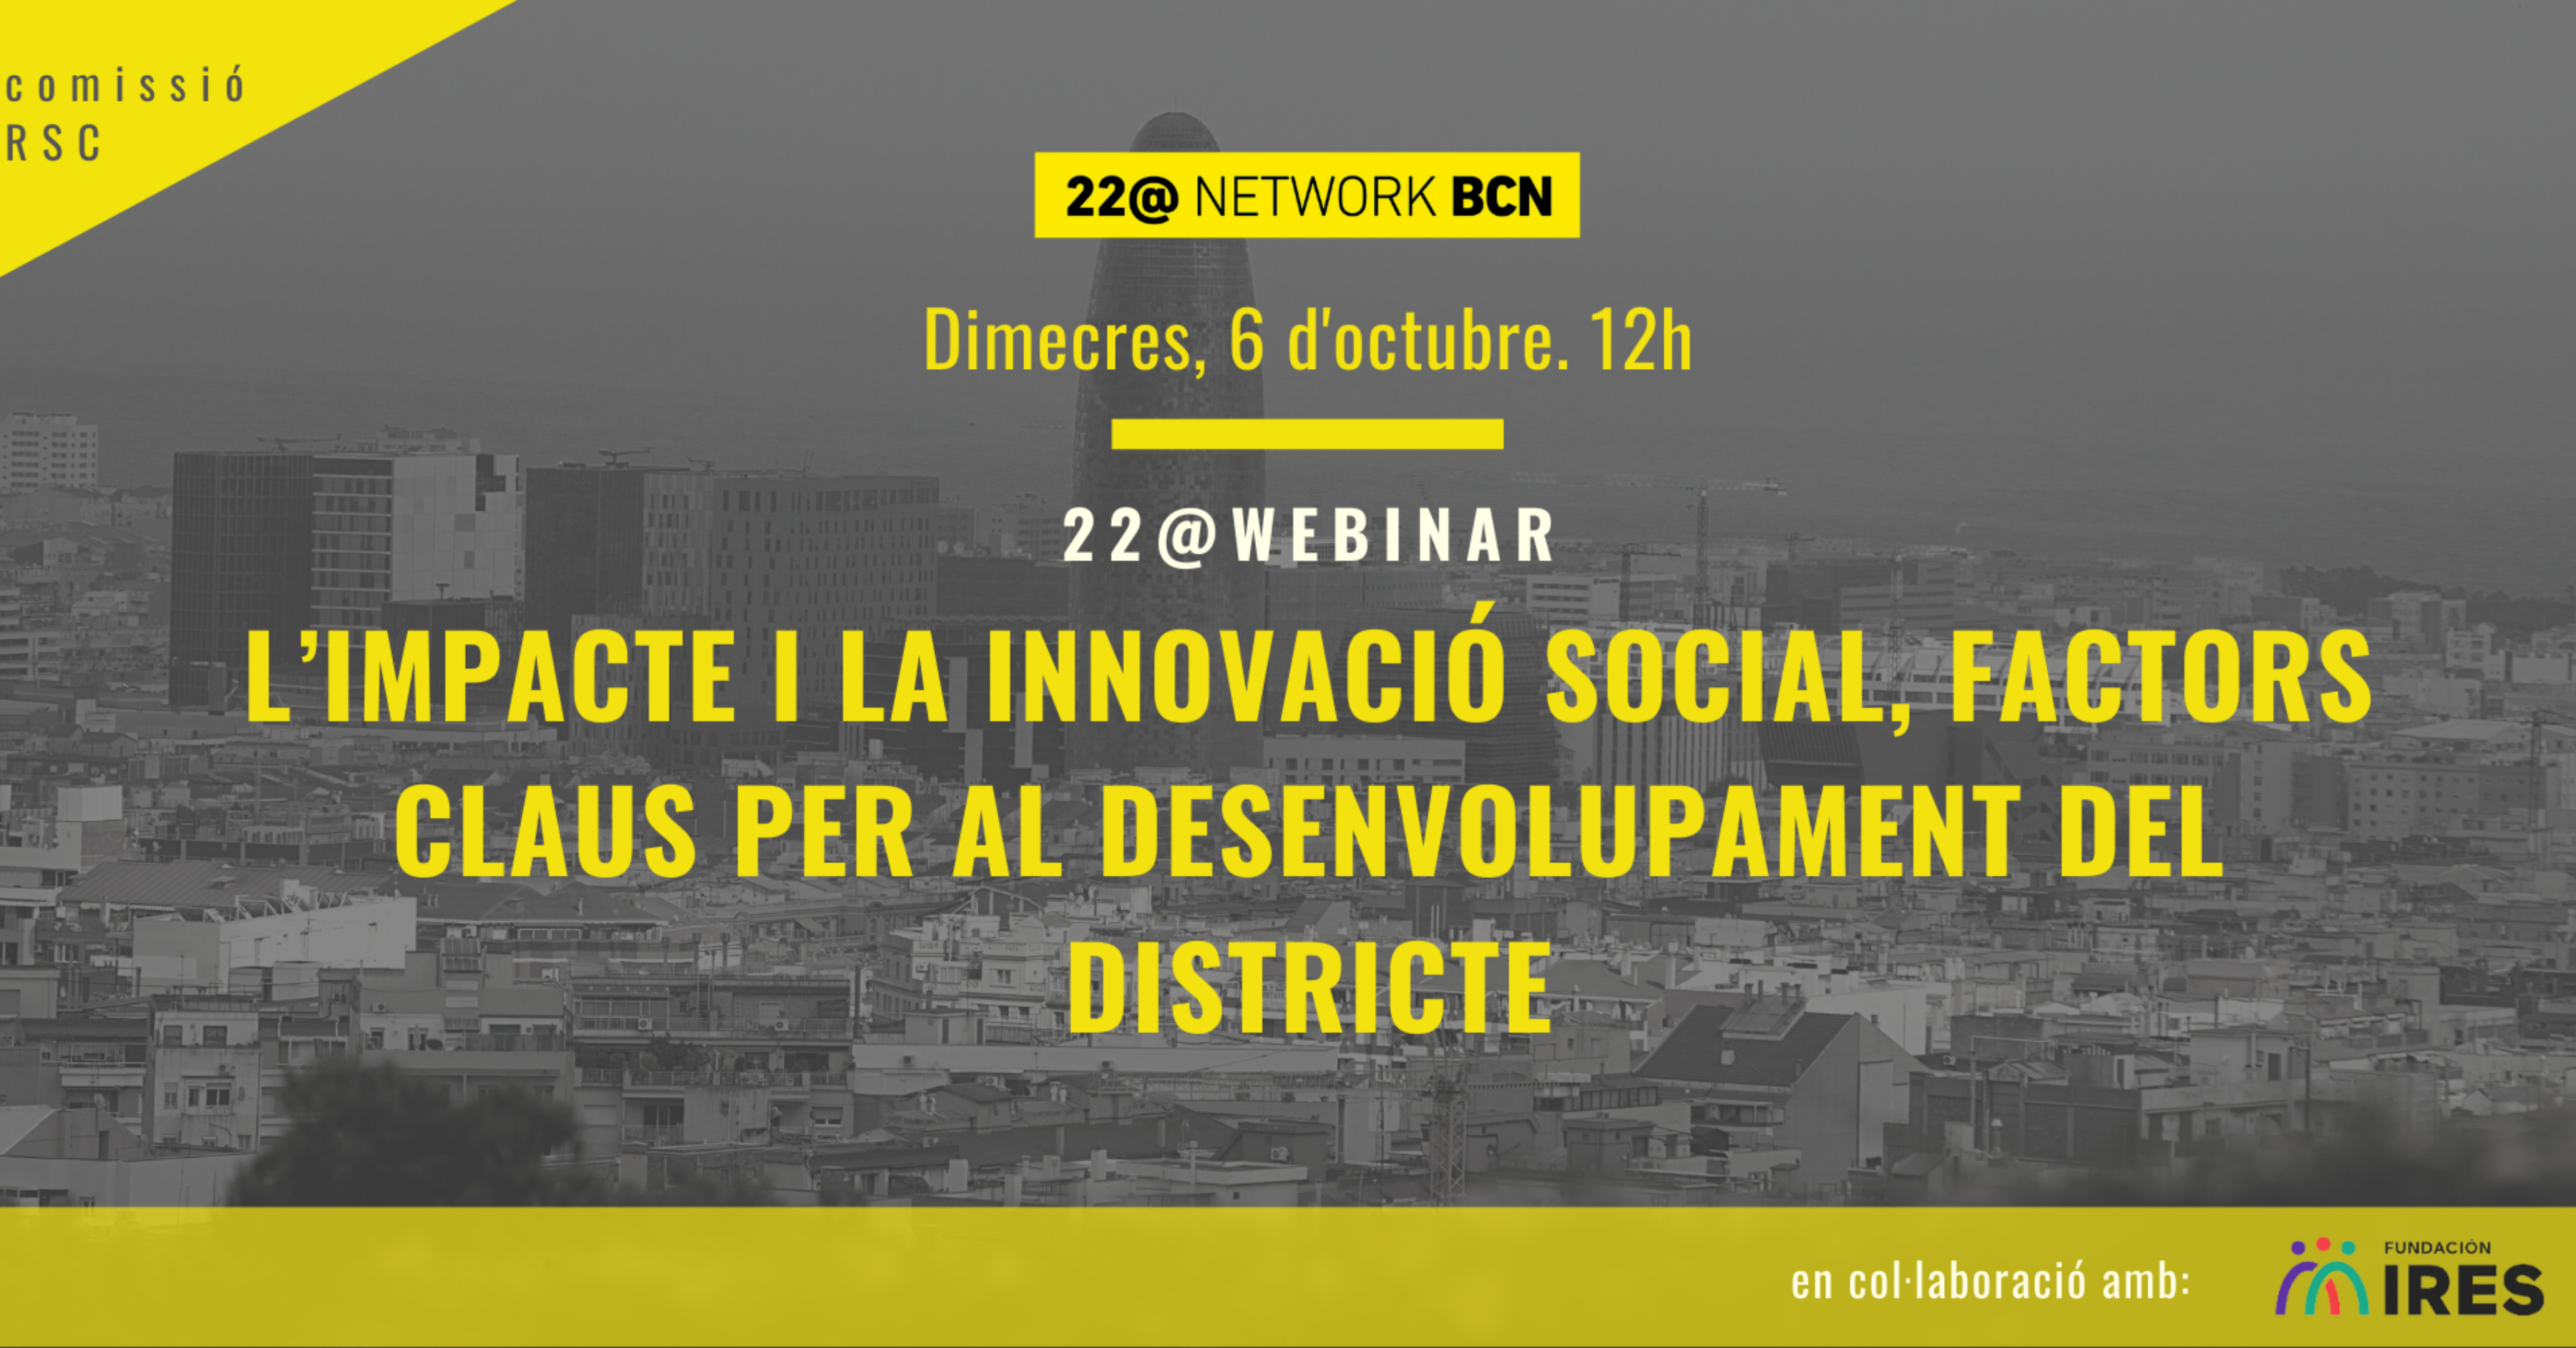 Cartell del webinar sobre l'impacte i la innovació social com a factors claus per al desenvolupament del districte